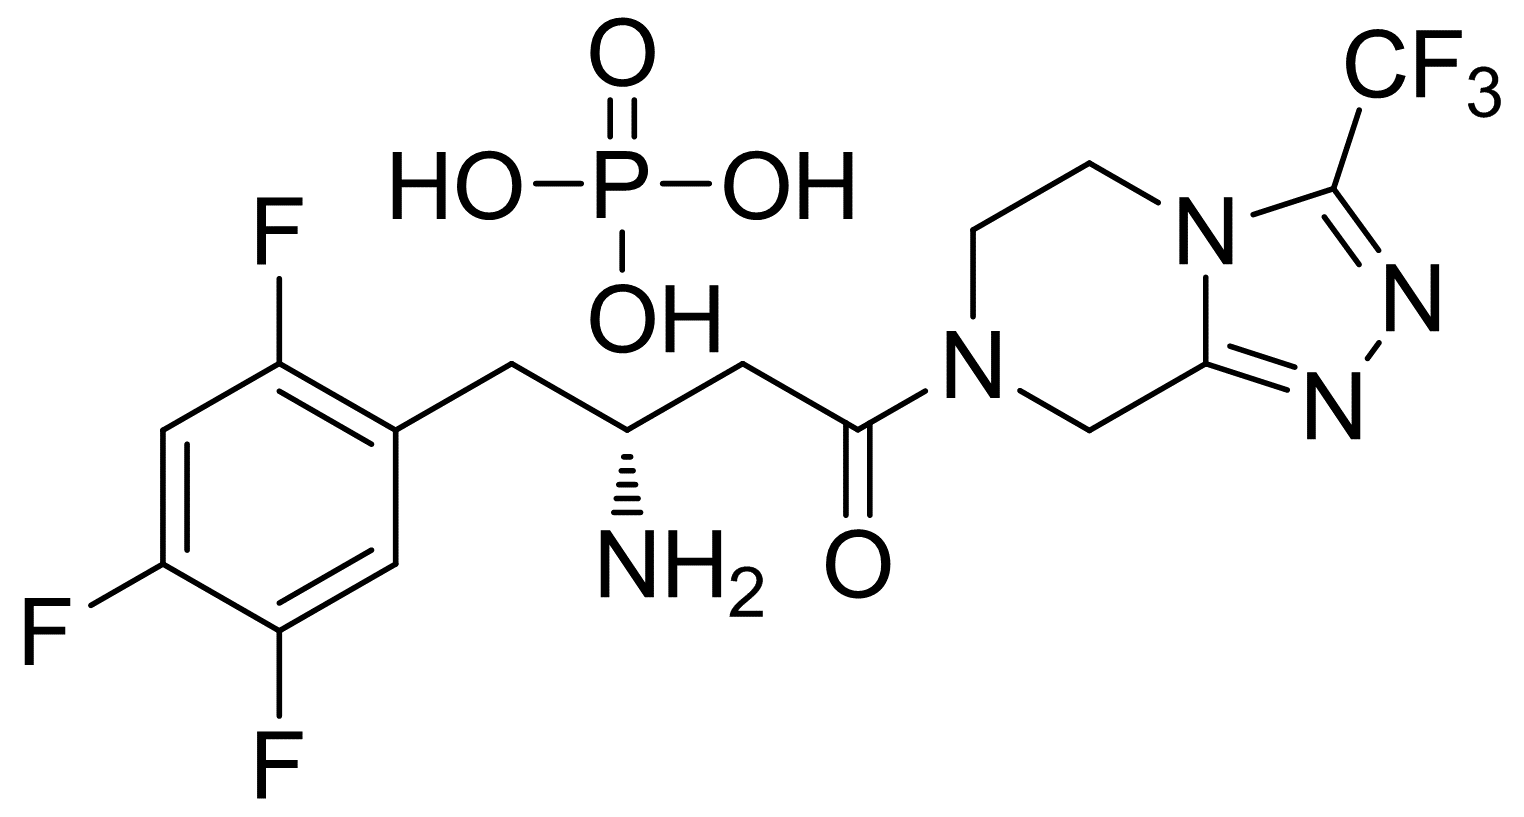 磷酸西他列汀